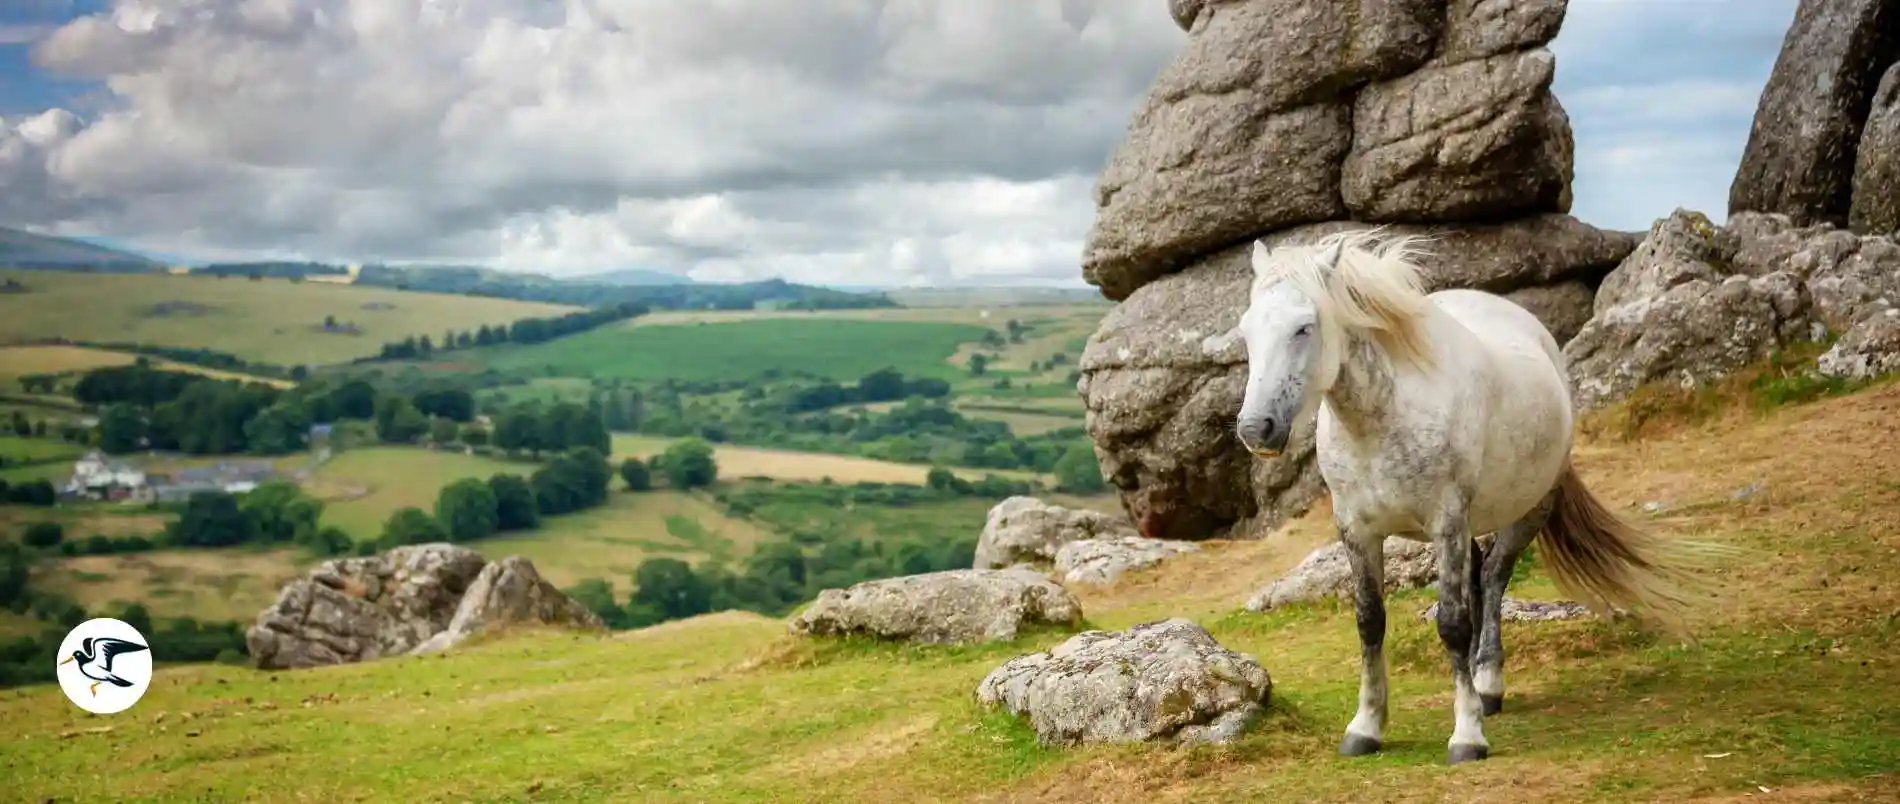 View across Dartmoor with ponies